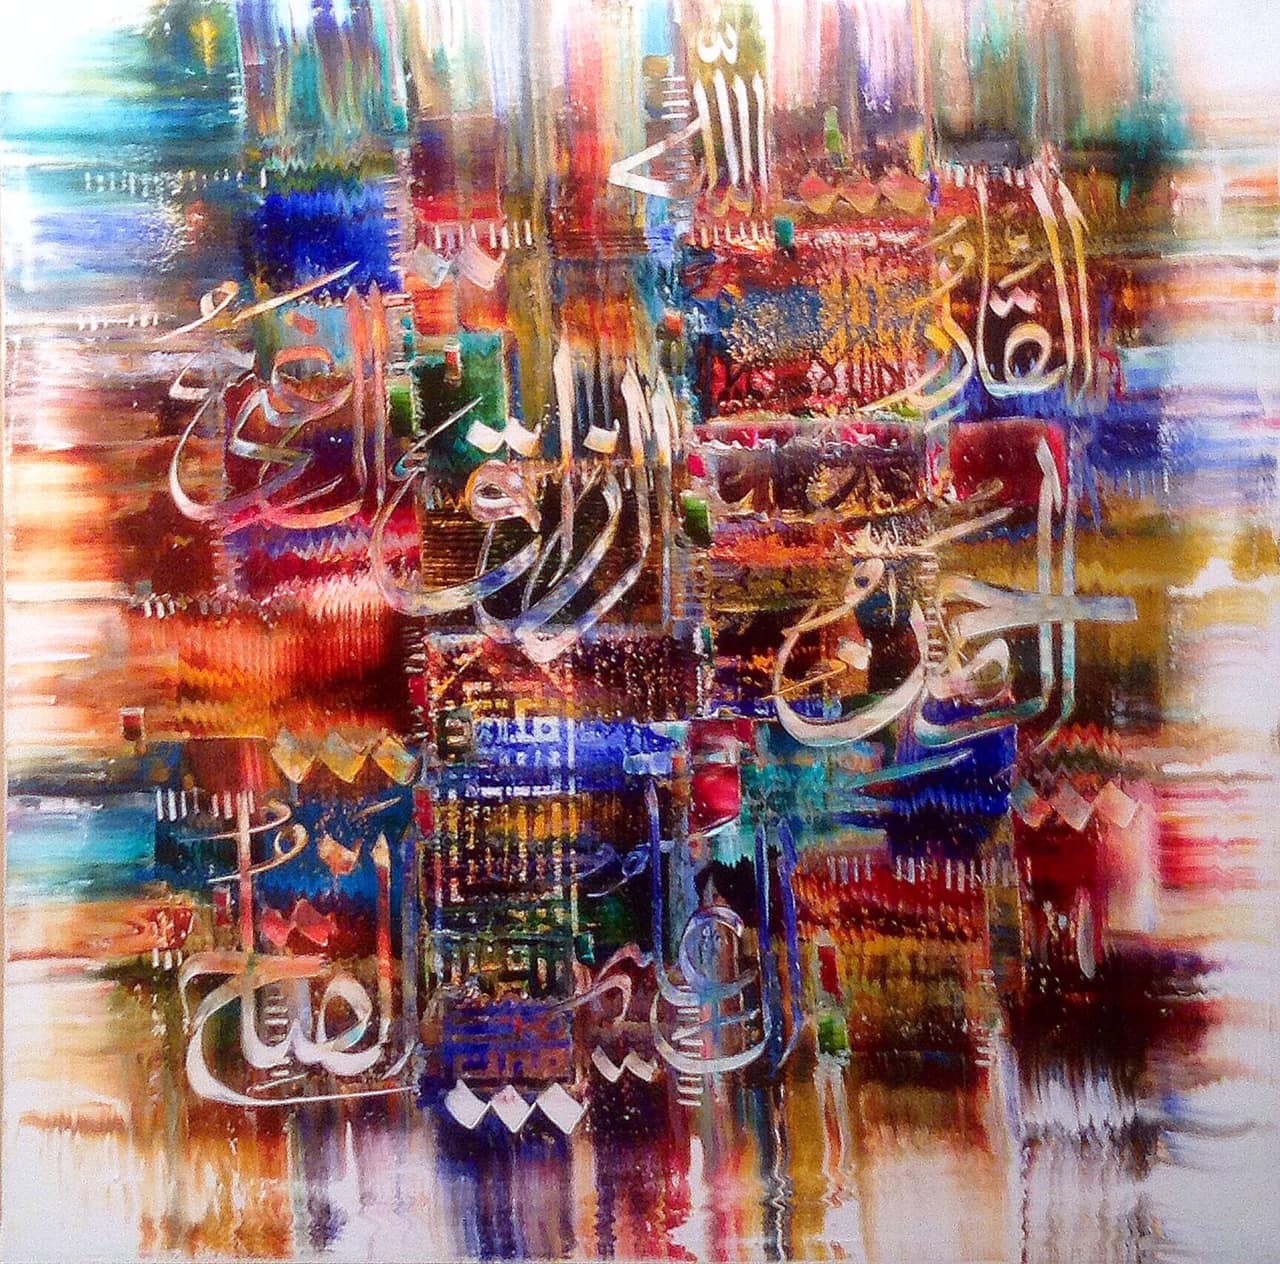 Download من أعمال الأستاذ محمد علي بخاري
M A Bukhari Art